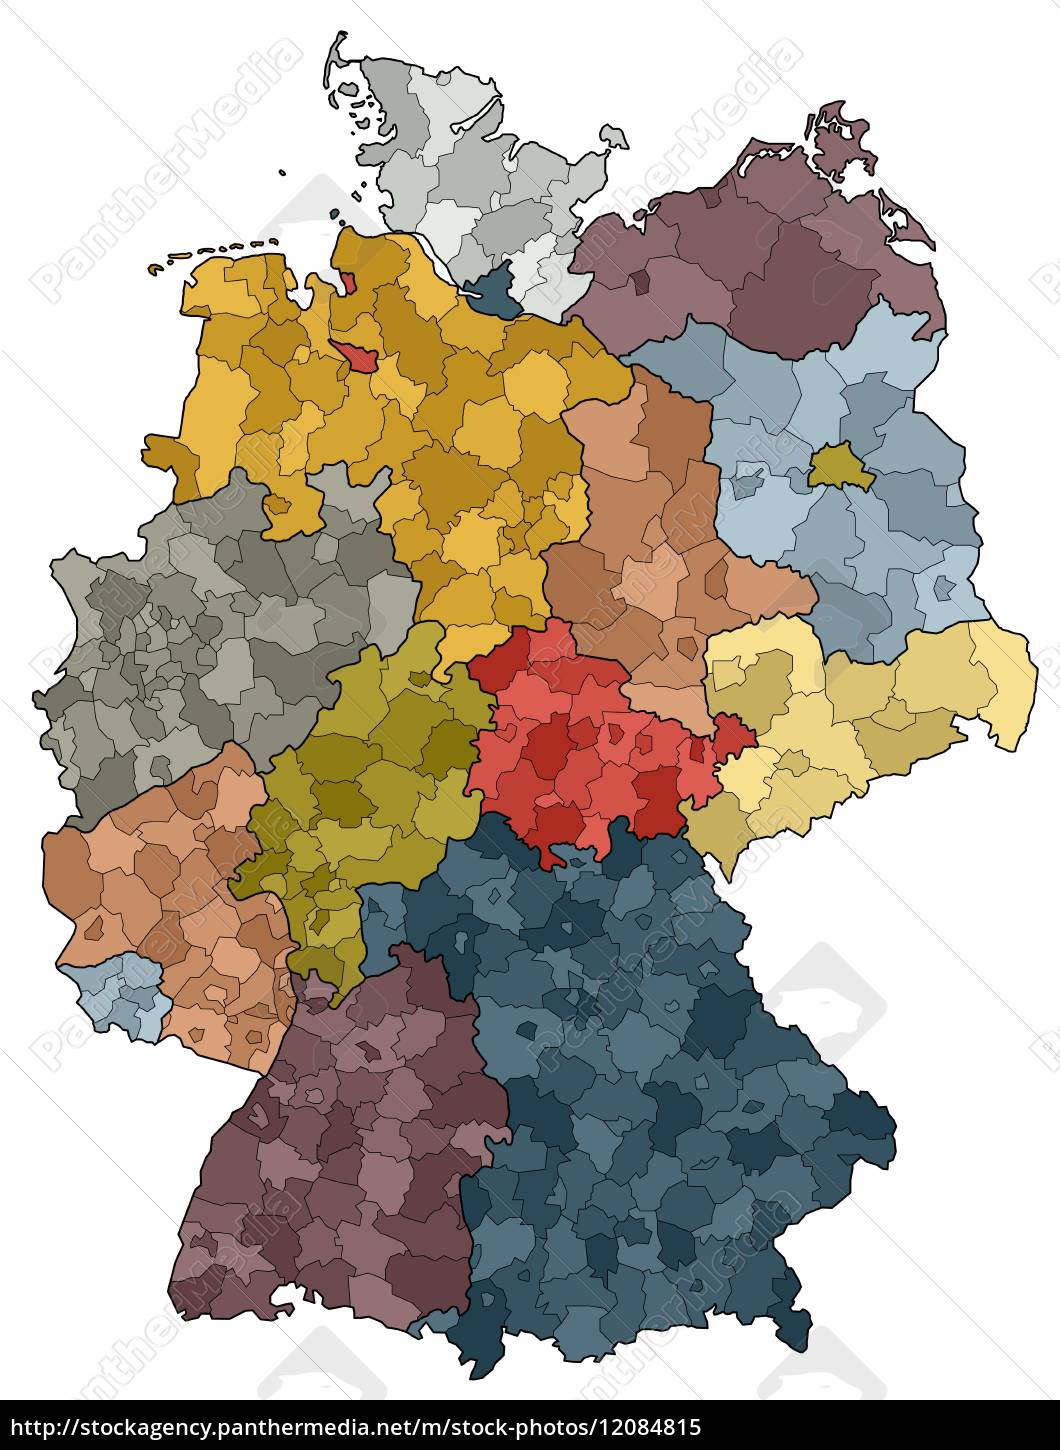 Stockfoto 12084815 - tyskland kort delstater og amter